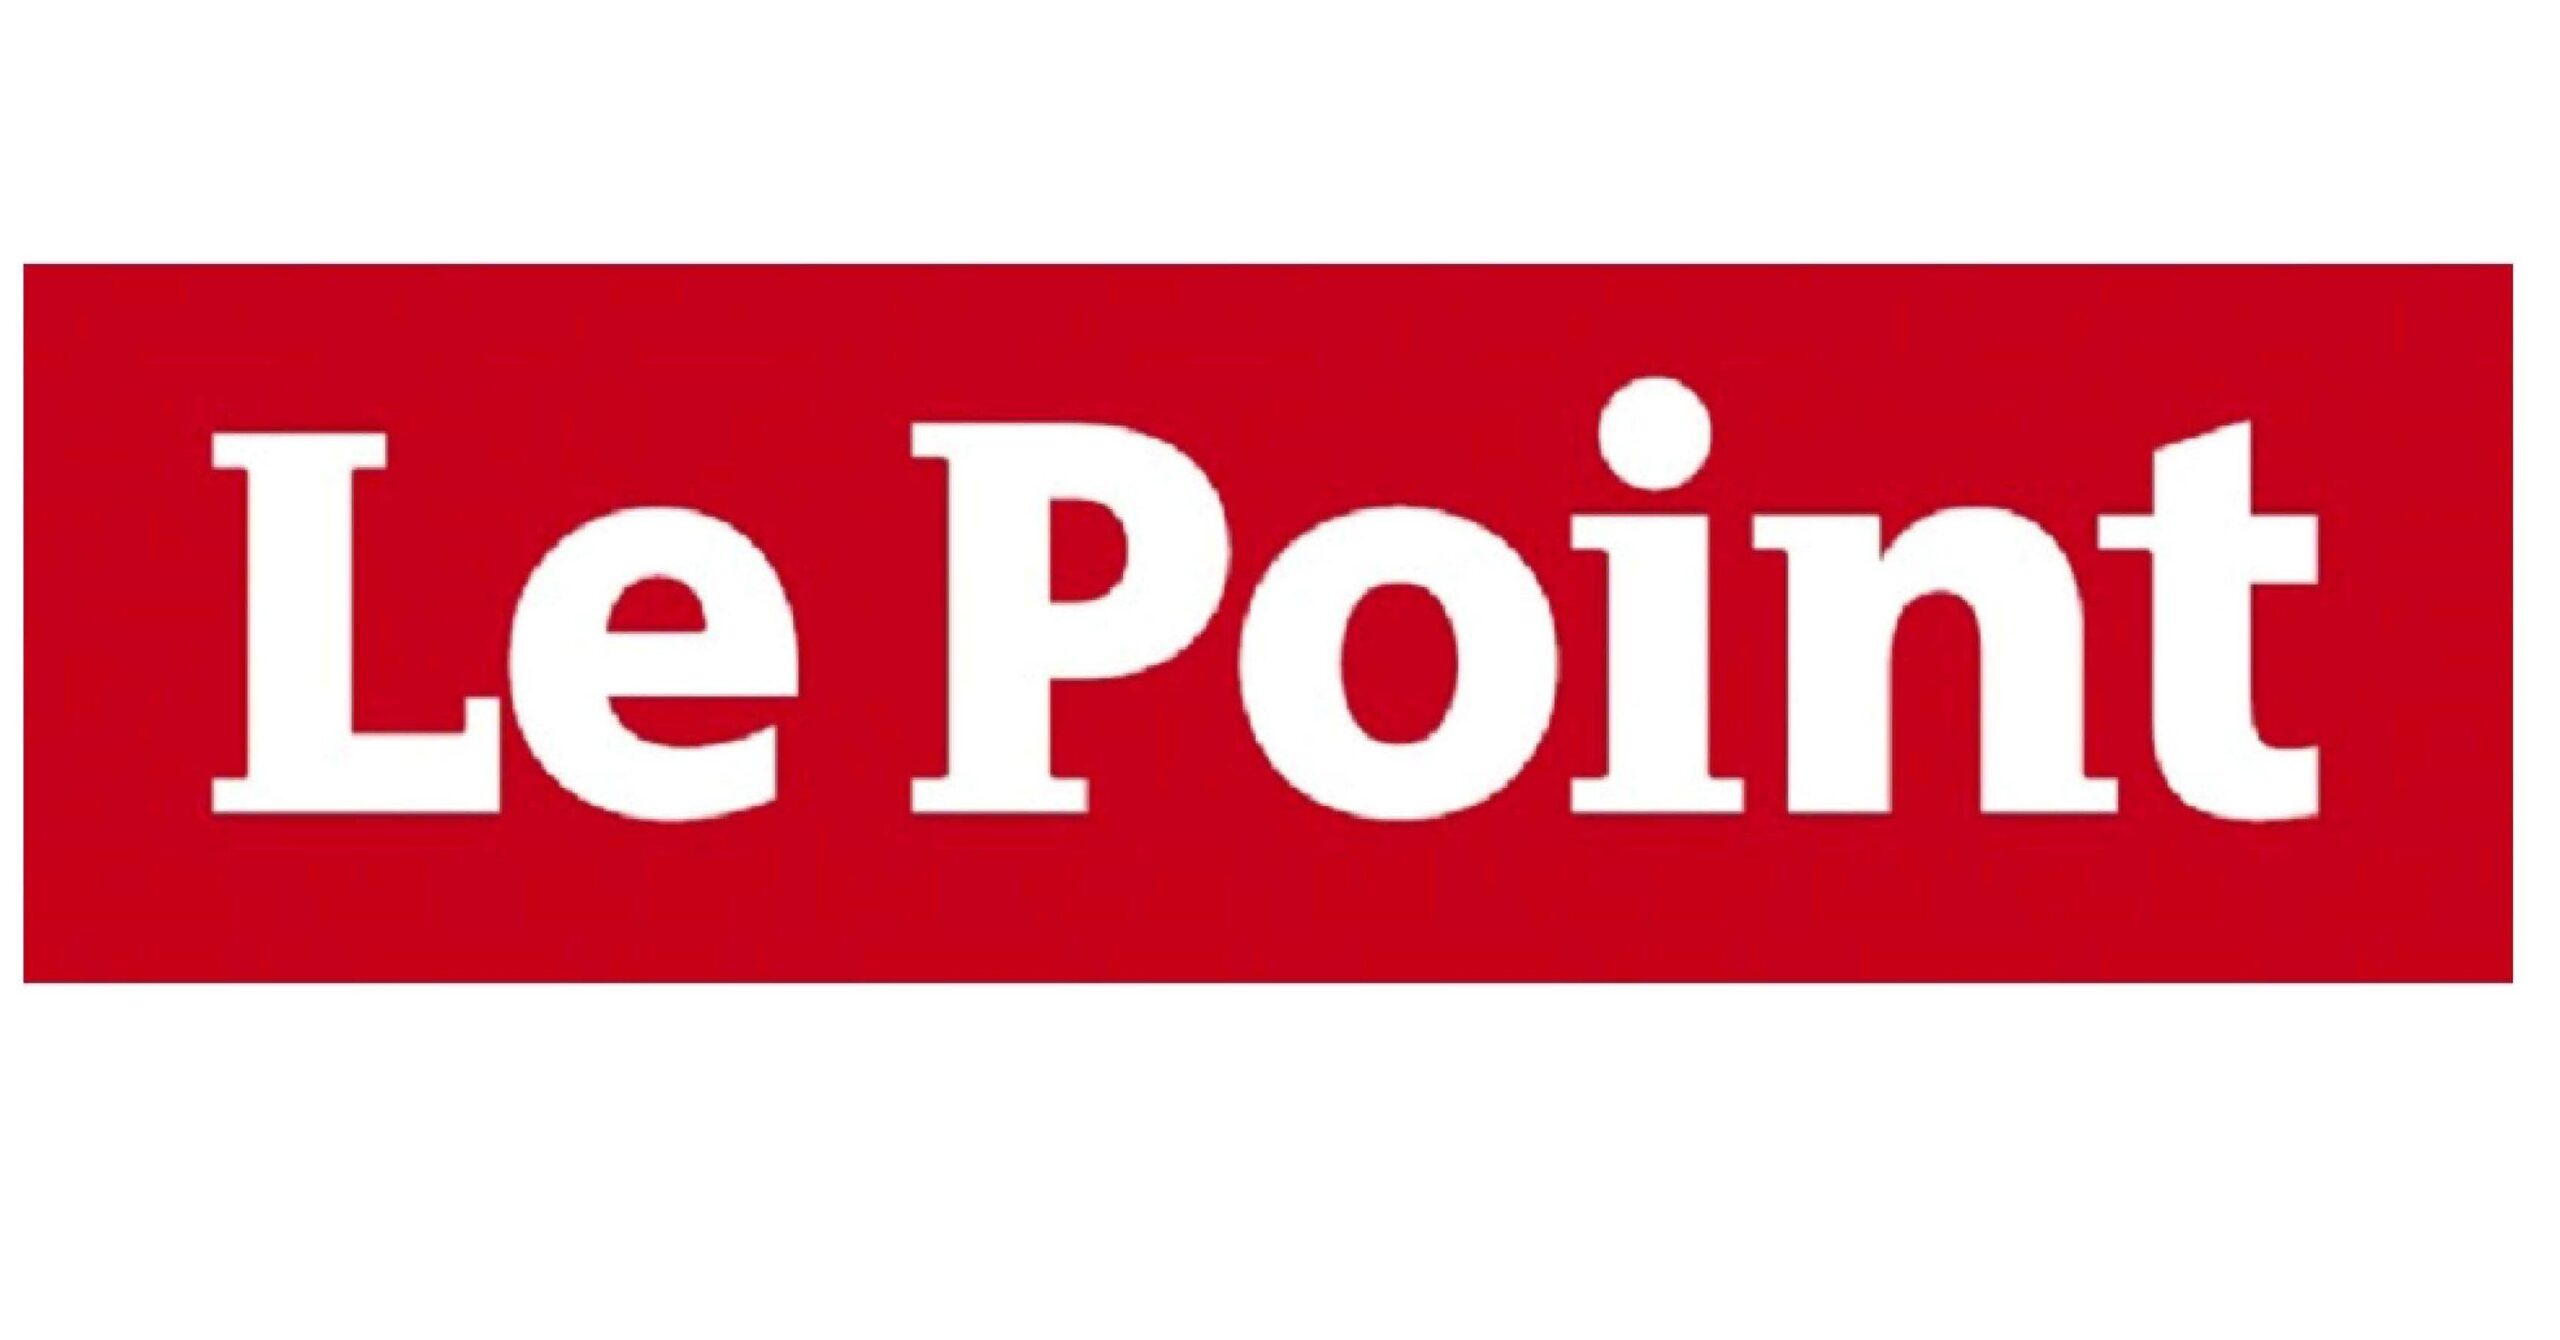 le point logo